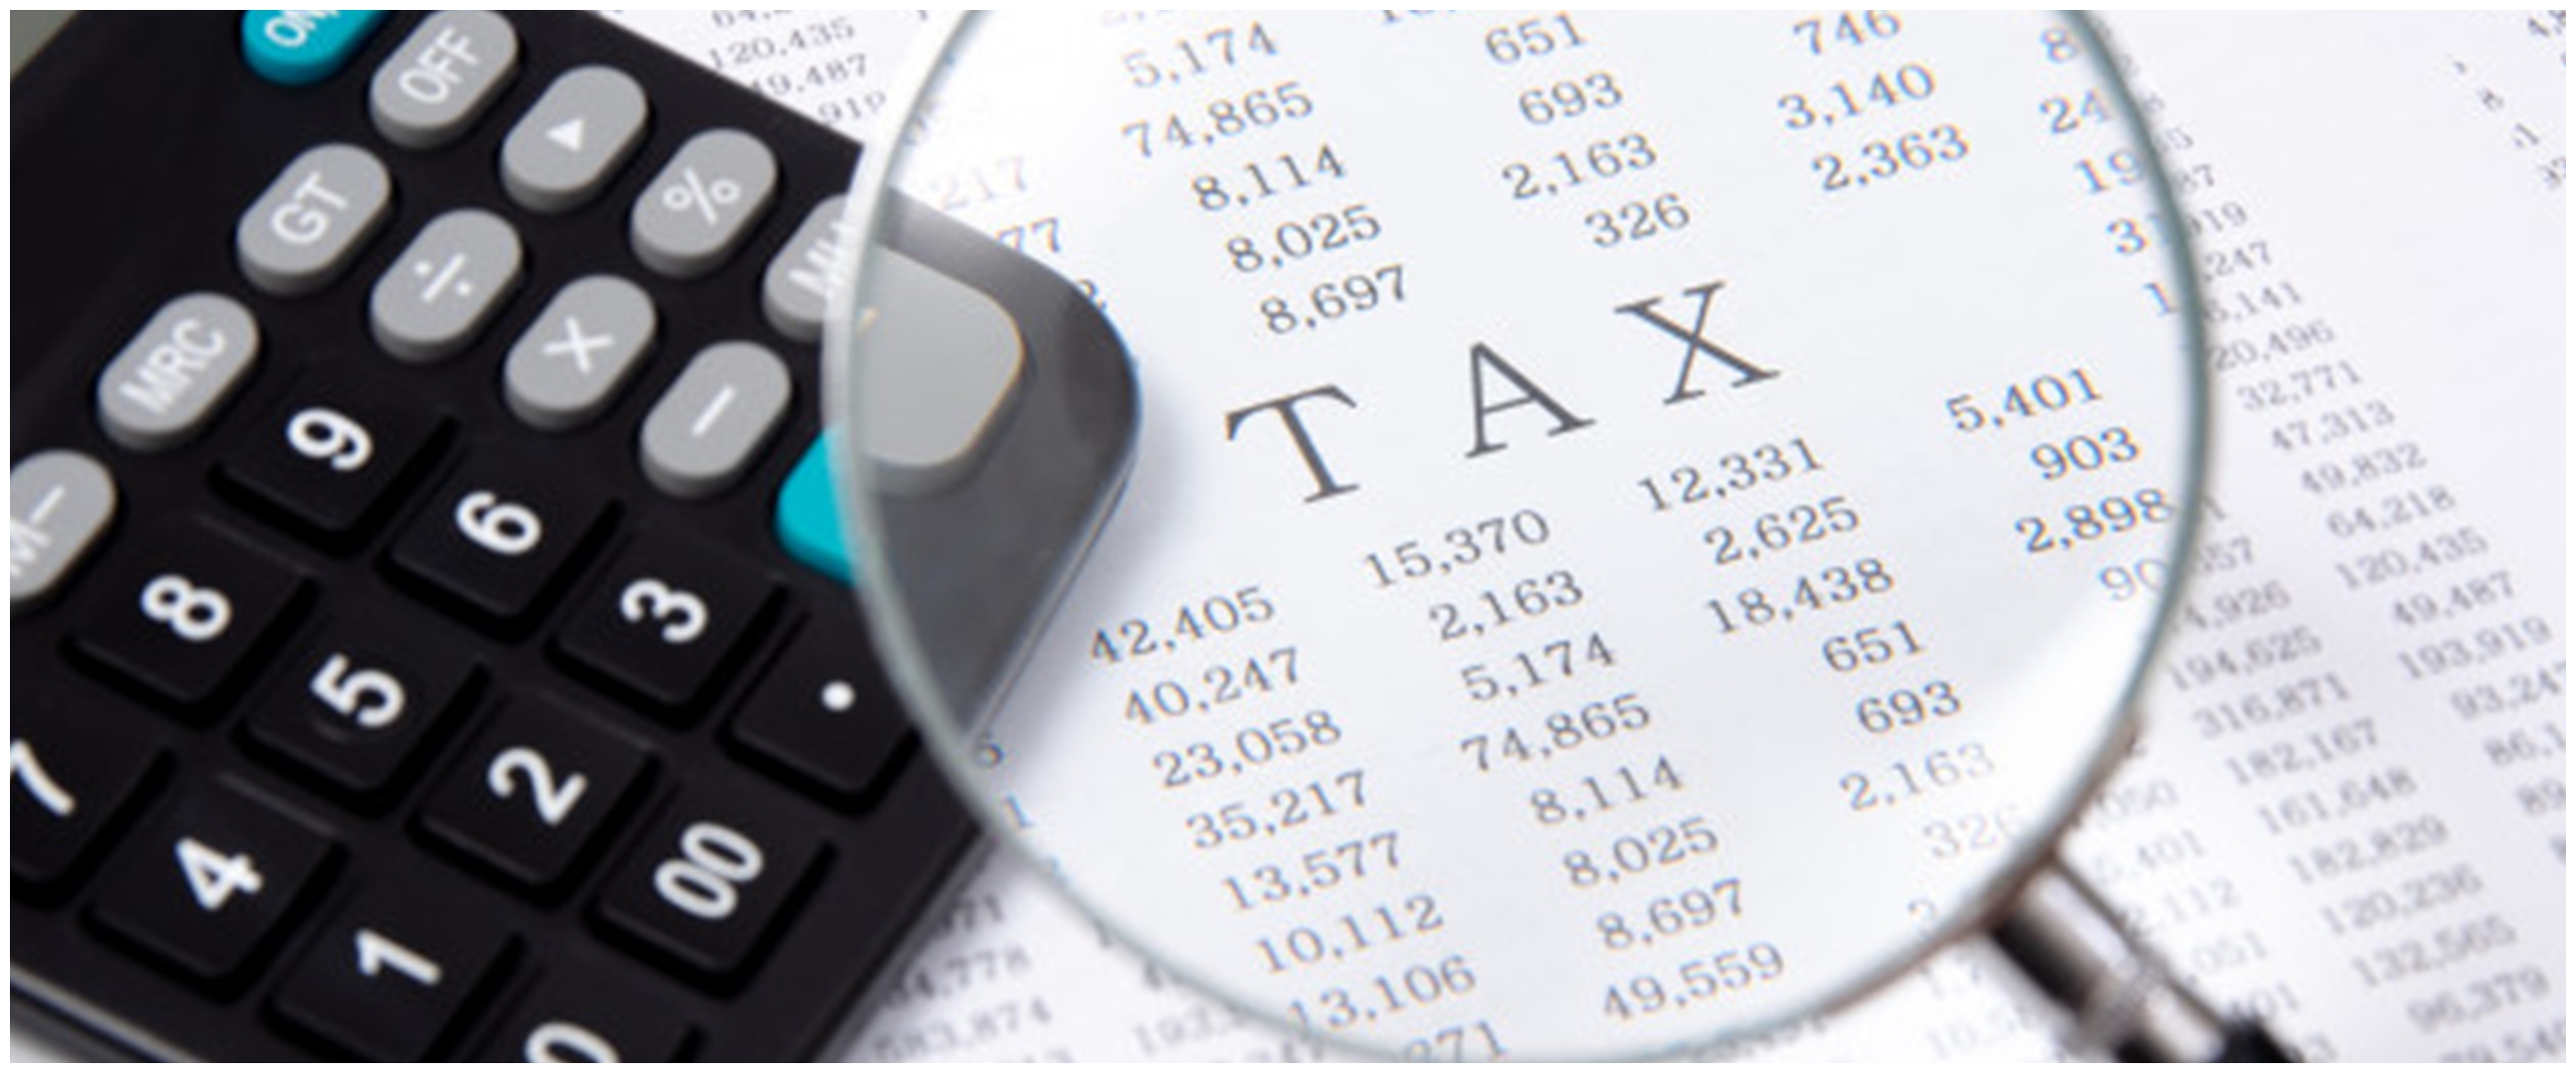 Cara dan syarat lapor SPT pajak online, mudah dan praktis